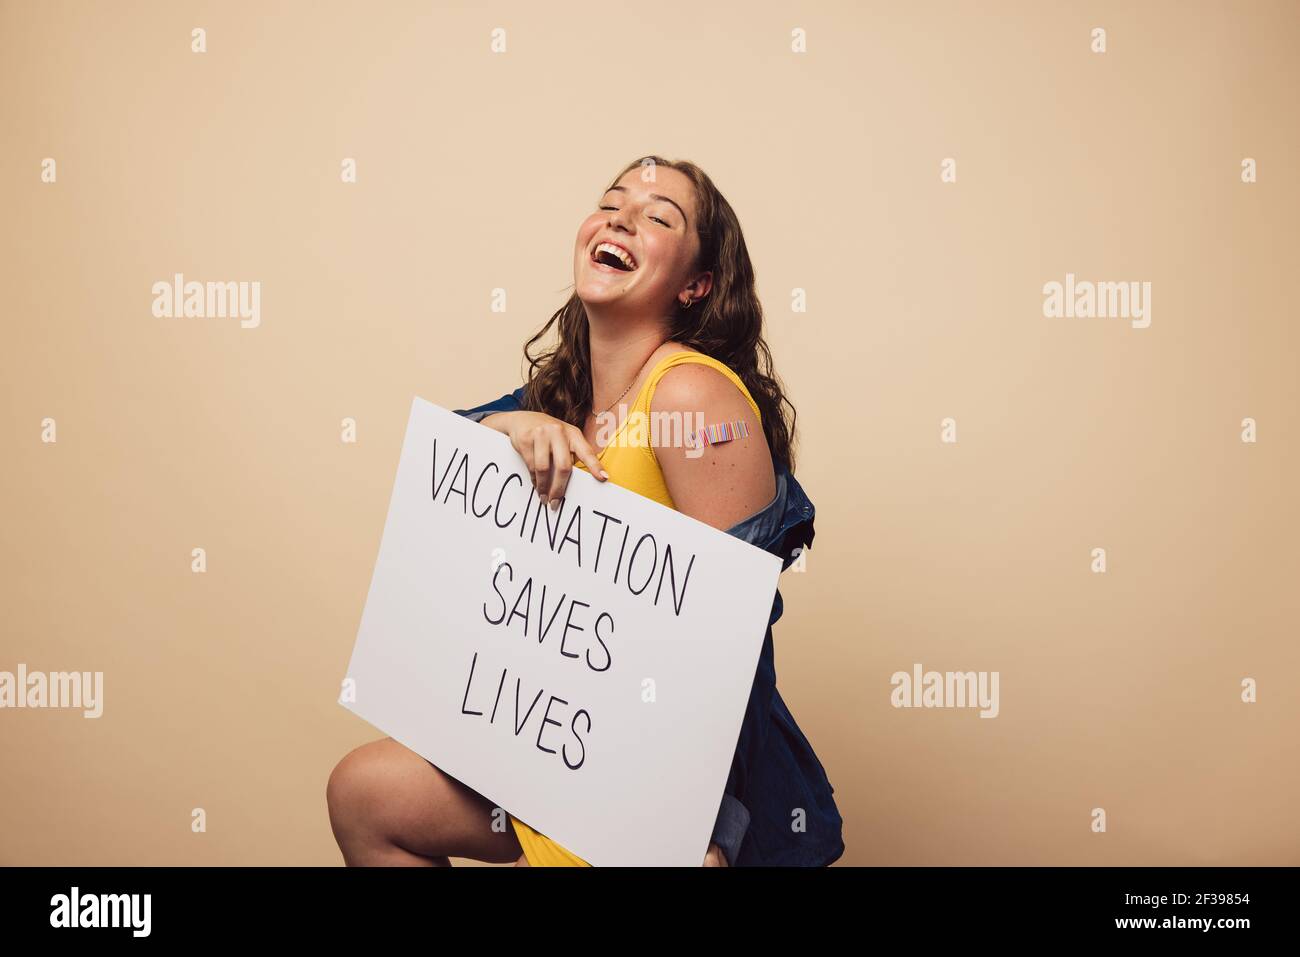 Donna ridente con un banner che mostra 'la vaccinazione salva vitea'. Femmina dopo aver ottenuto la vaccinazione tenendo un banner su sfondo marrone. Foto Stock